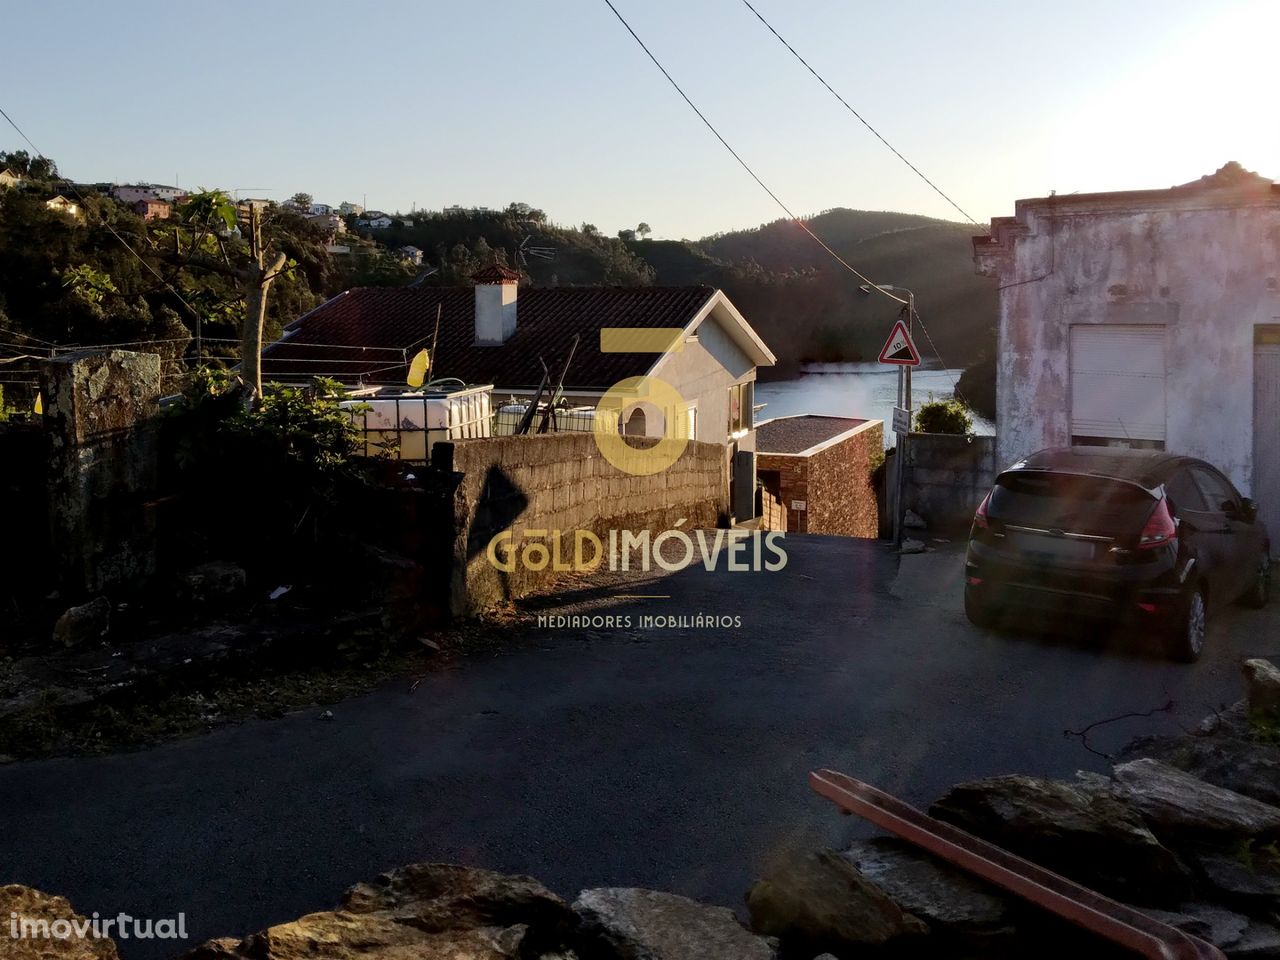 Moradia para reconstrução com vista sobre Rio Douro  - Lomba / Gondoma